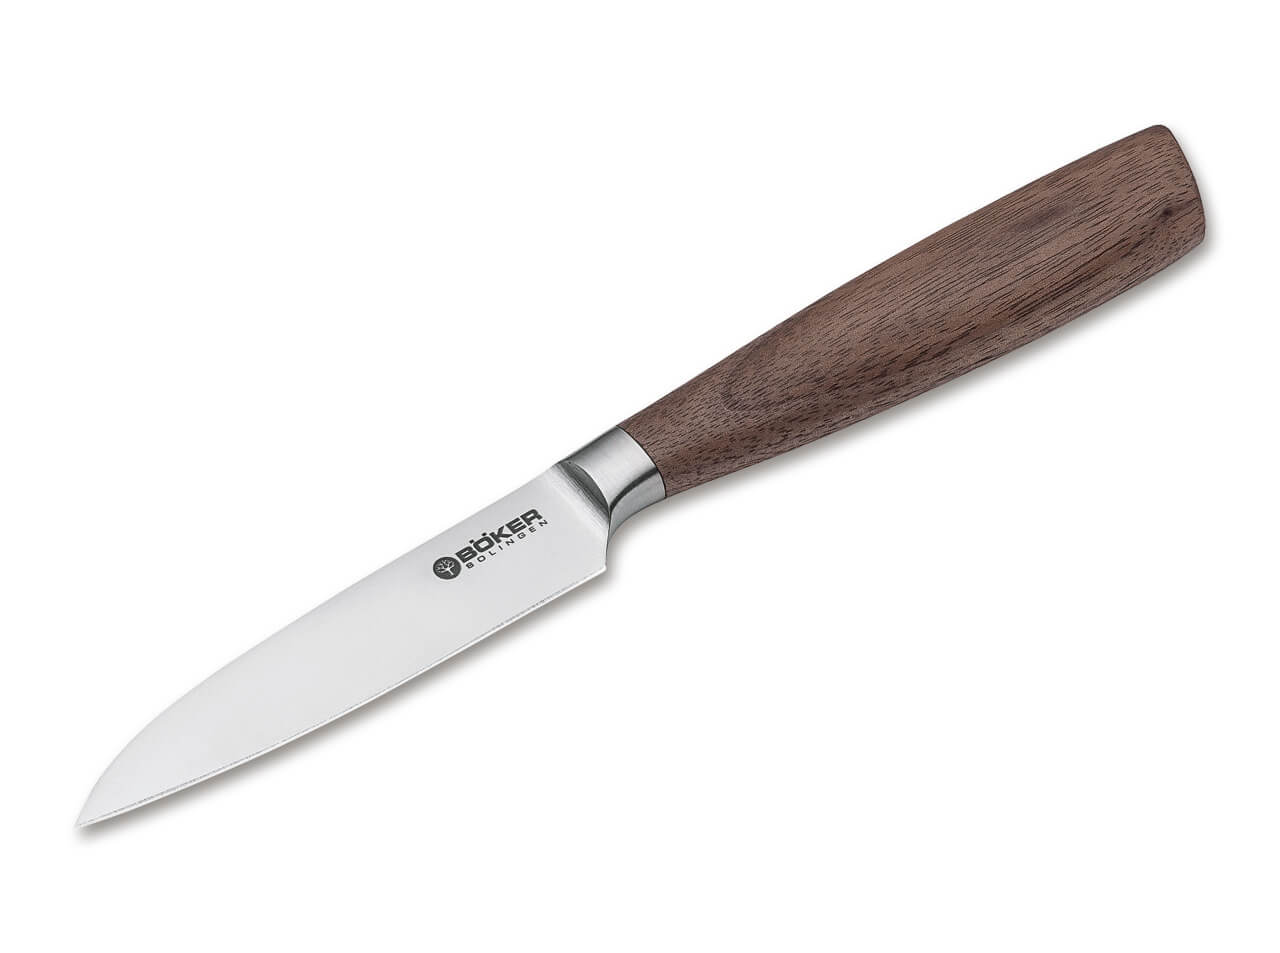 https://www.bokerusa.com/media/image/b2/c4/a5/boeker-manufaktur-solingen-core-vegetable-knife-130715.jpg